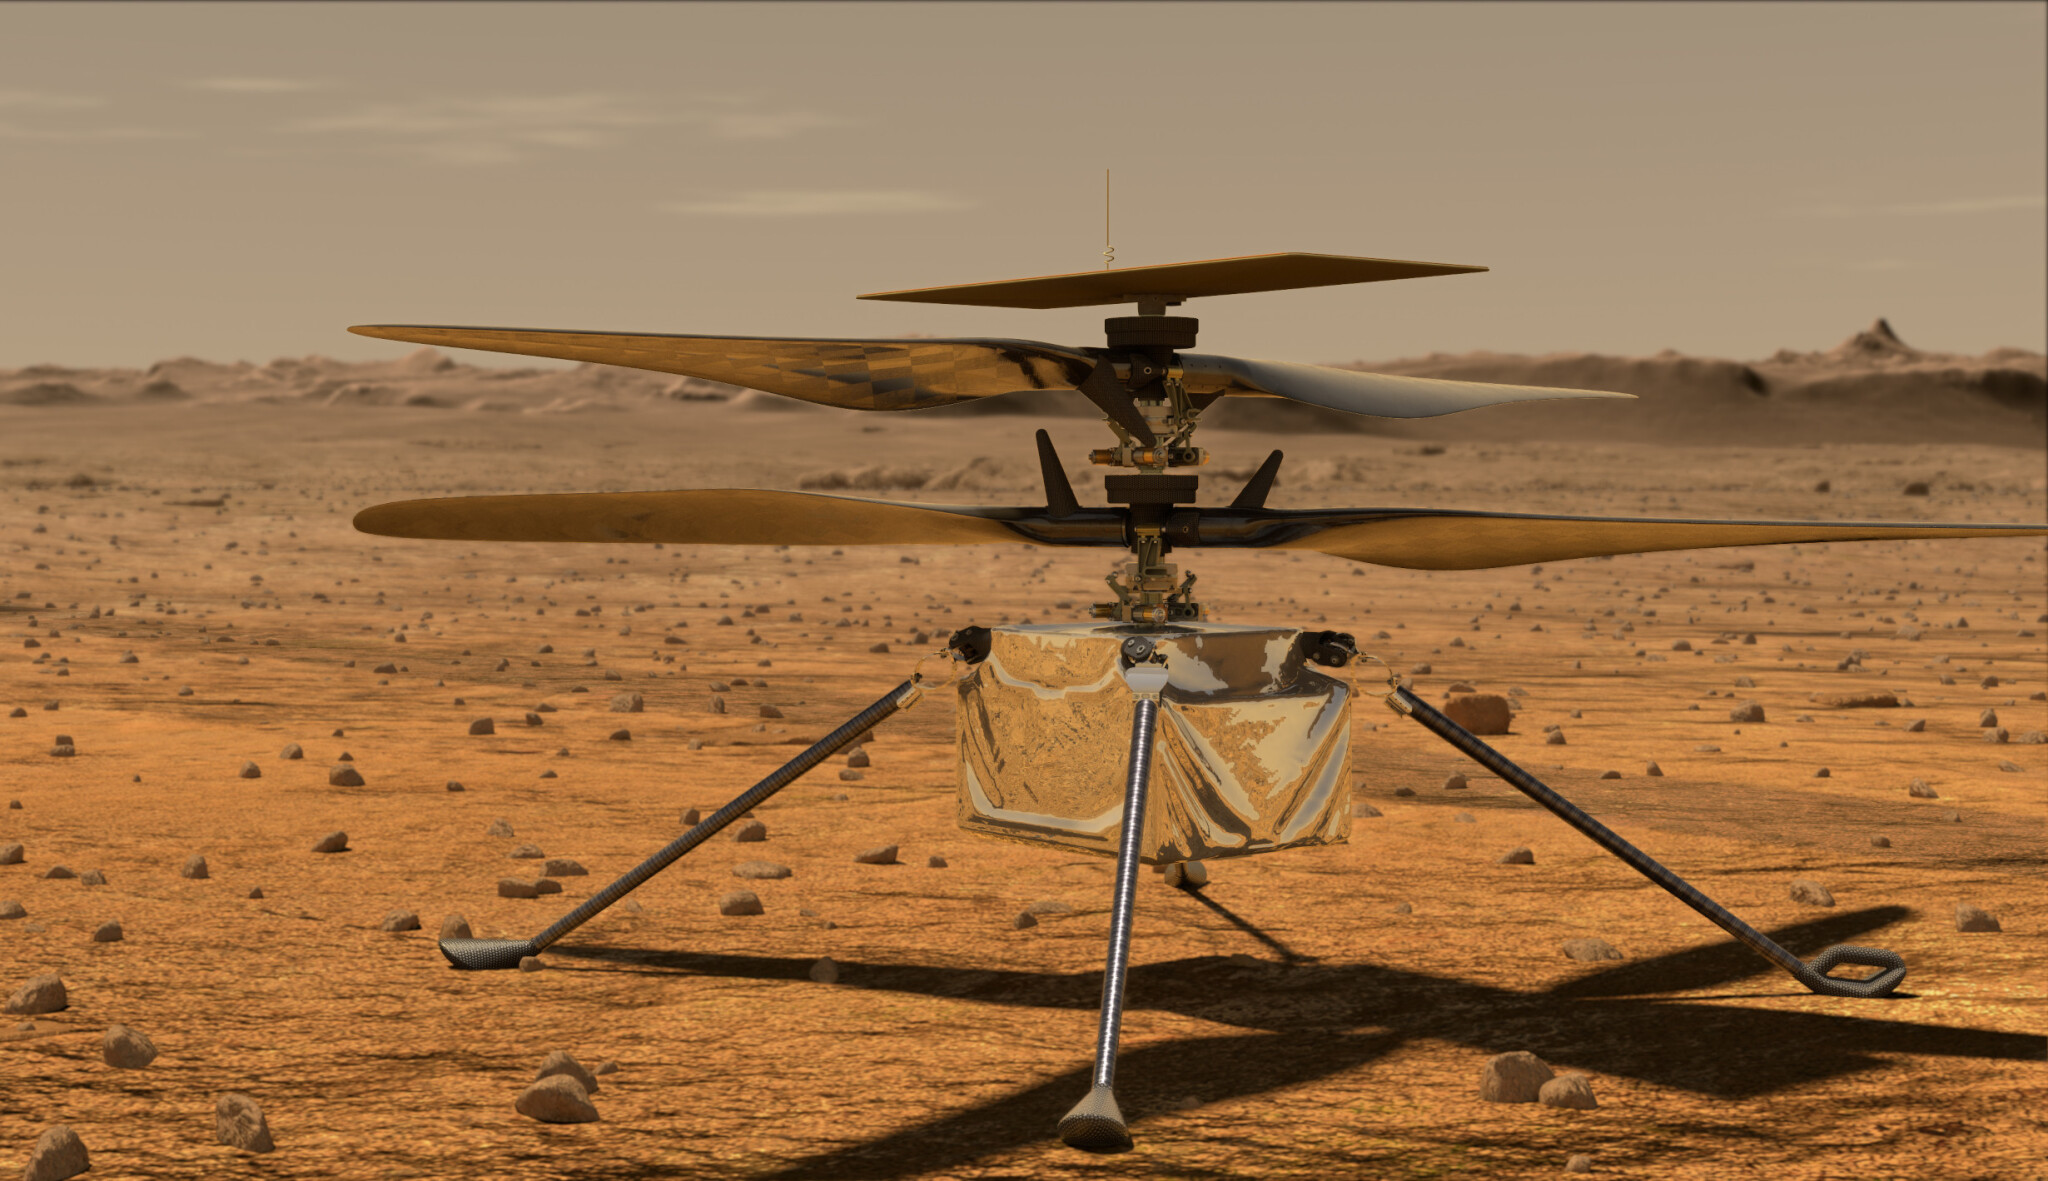 Vrtulník Ingenuity zdolal na Marsu svou první vědeckou misi. A nezapomněl na fotky